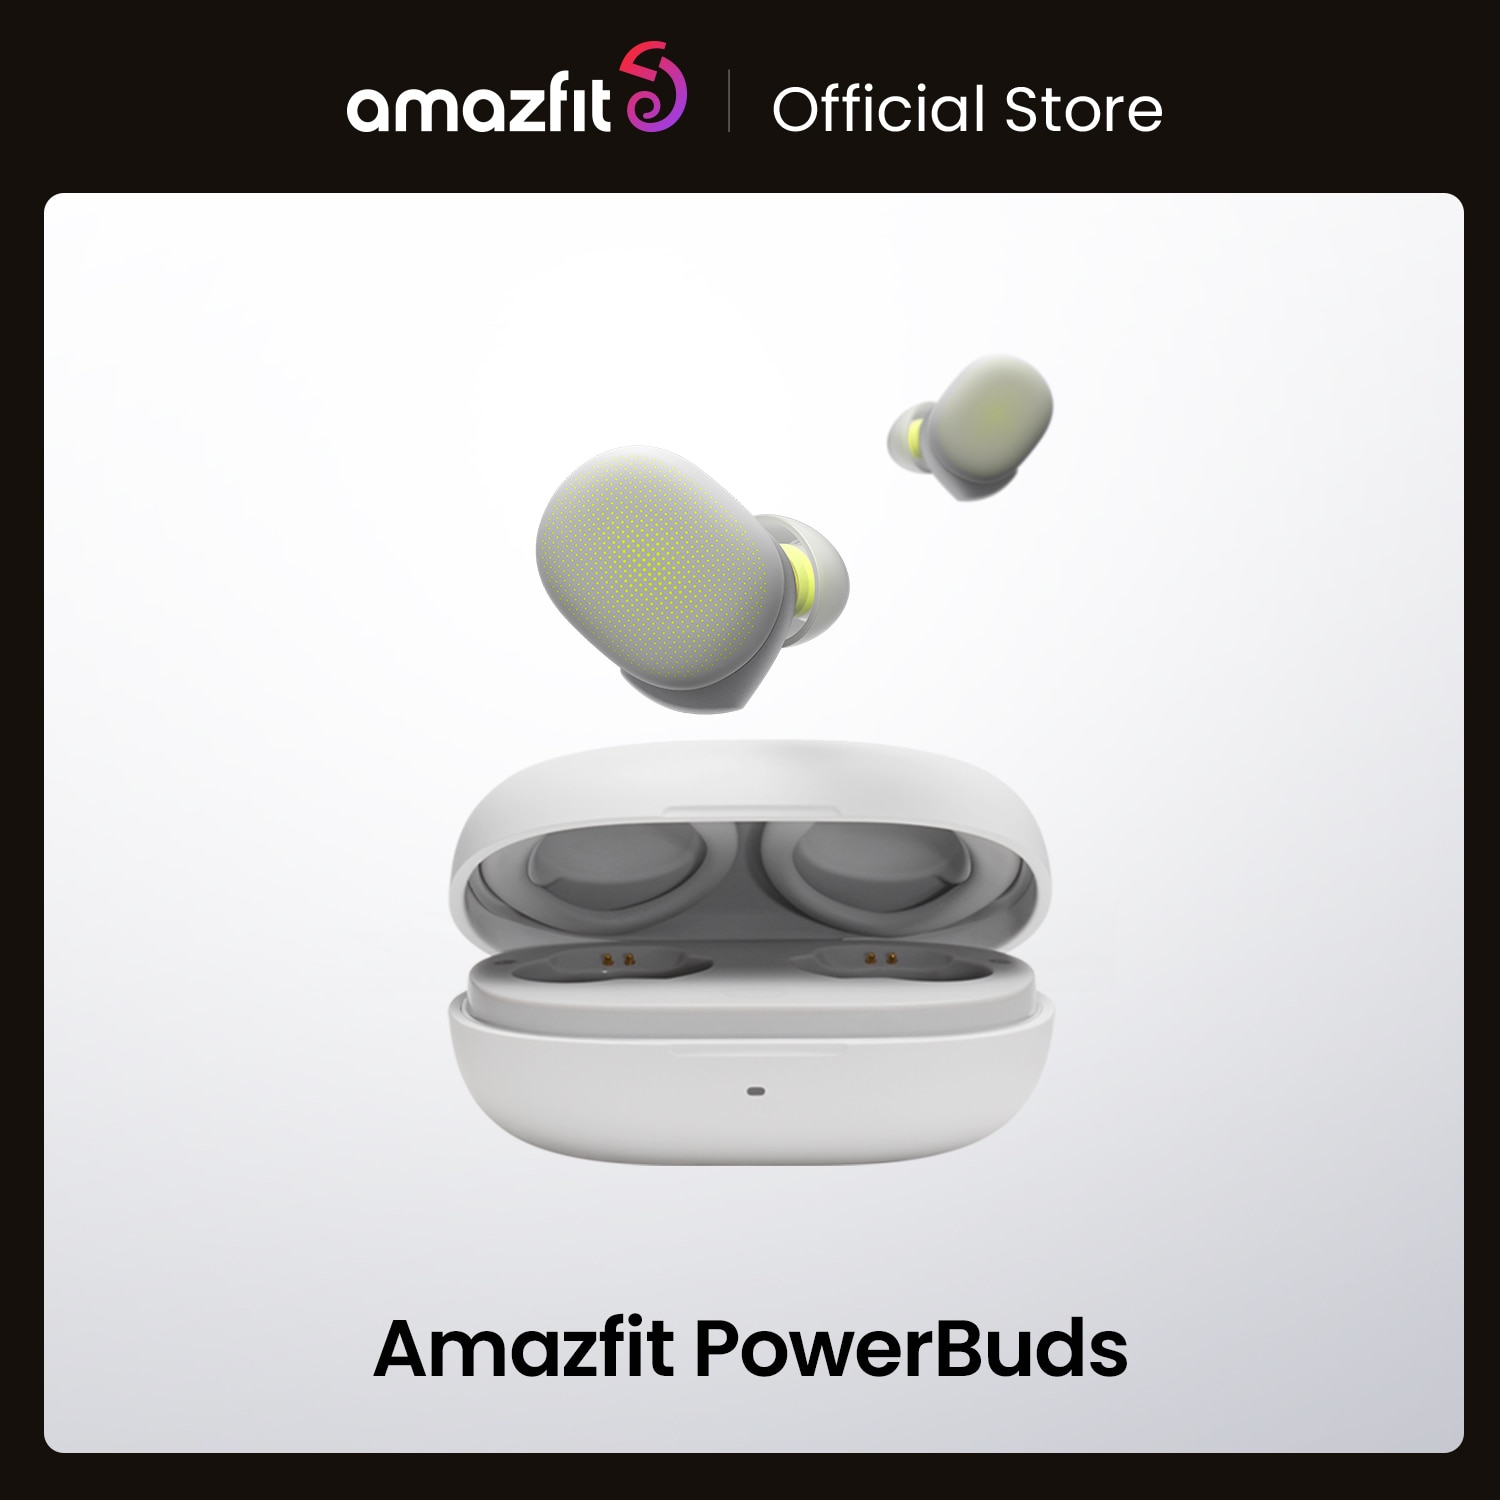 Amazfit-fones de ouvido powerbuds tws., headset intra-auricular sem fio com monitor de...